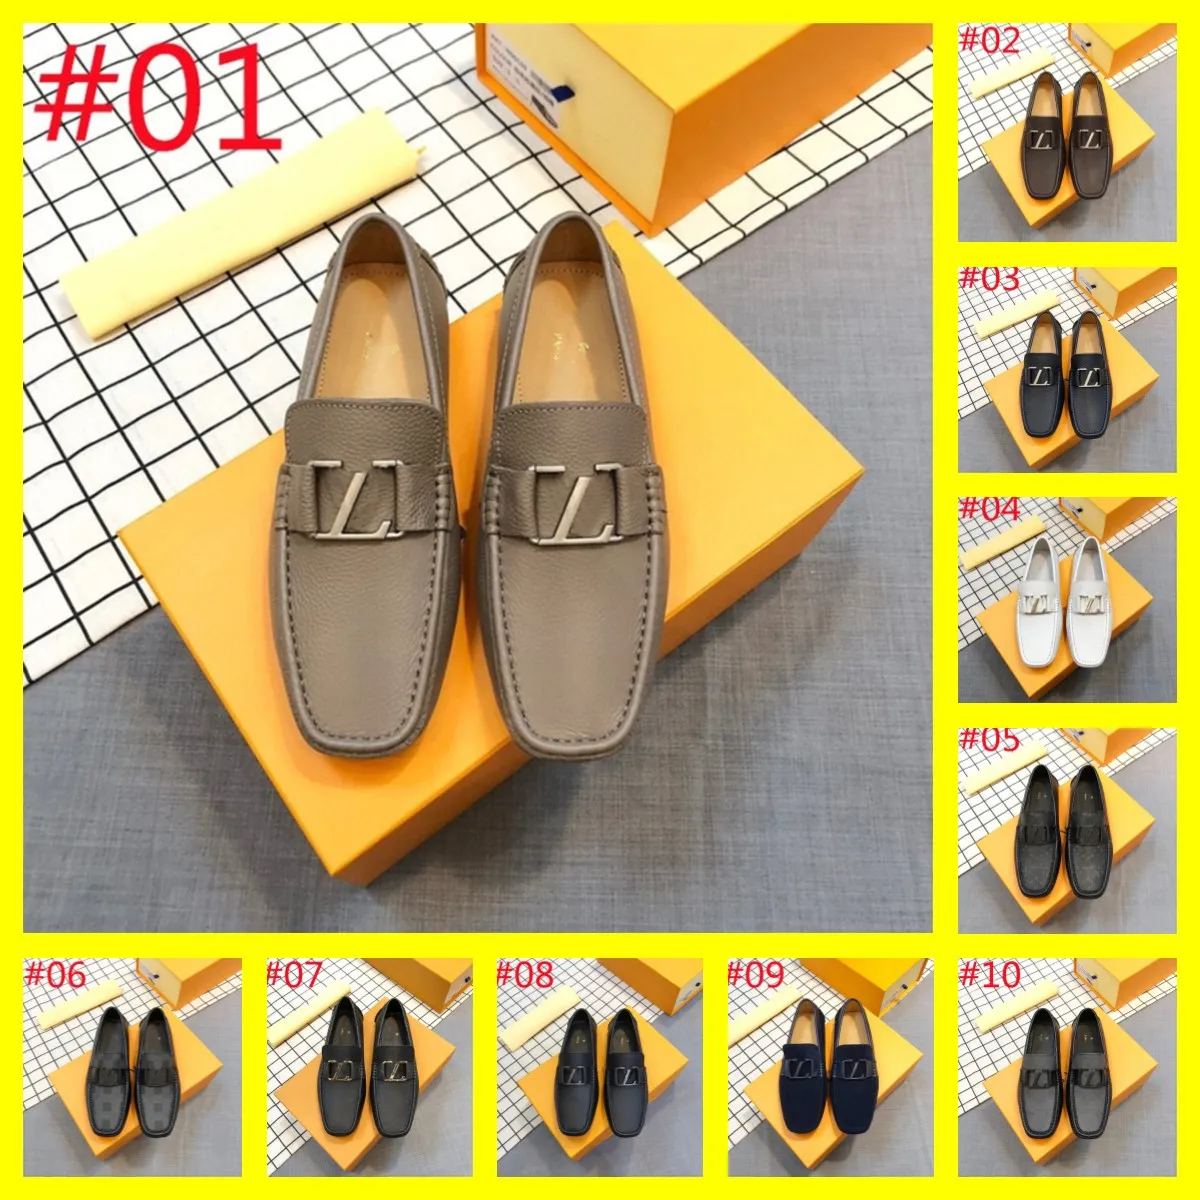 40 tarzı erkek tasarımcı loafers ayakkabıları lüks İtalyan klasikleri altın mokasenler elbise ayakkabıları siyah beyaz gerçek deri ofis düğün yürüyüş sürücü ayakkabı boyutu 6.5-12